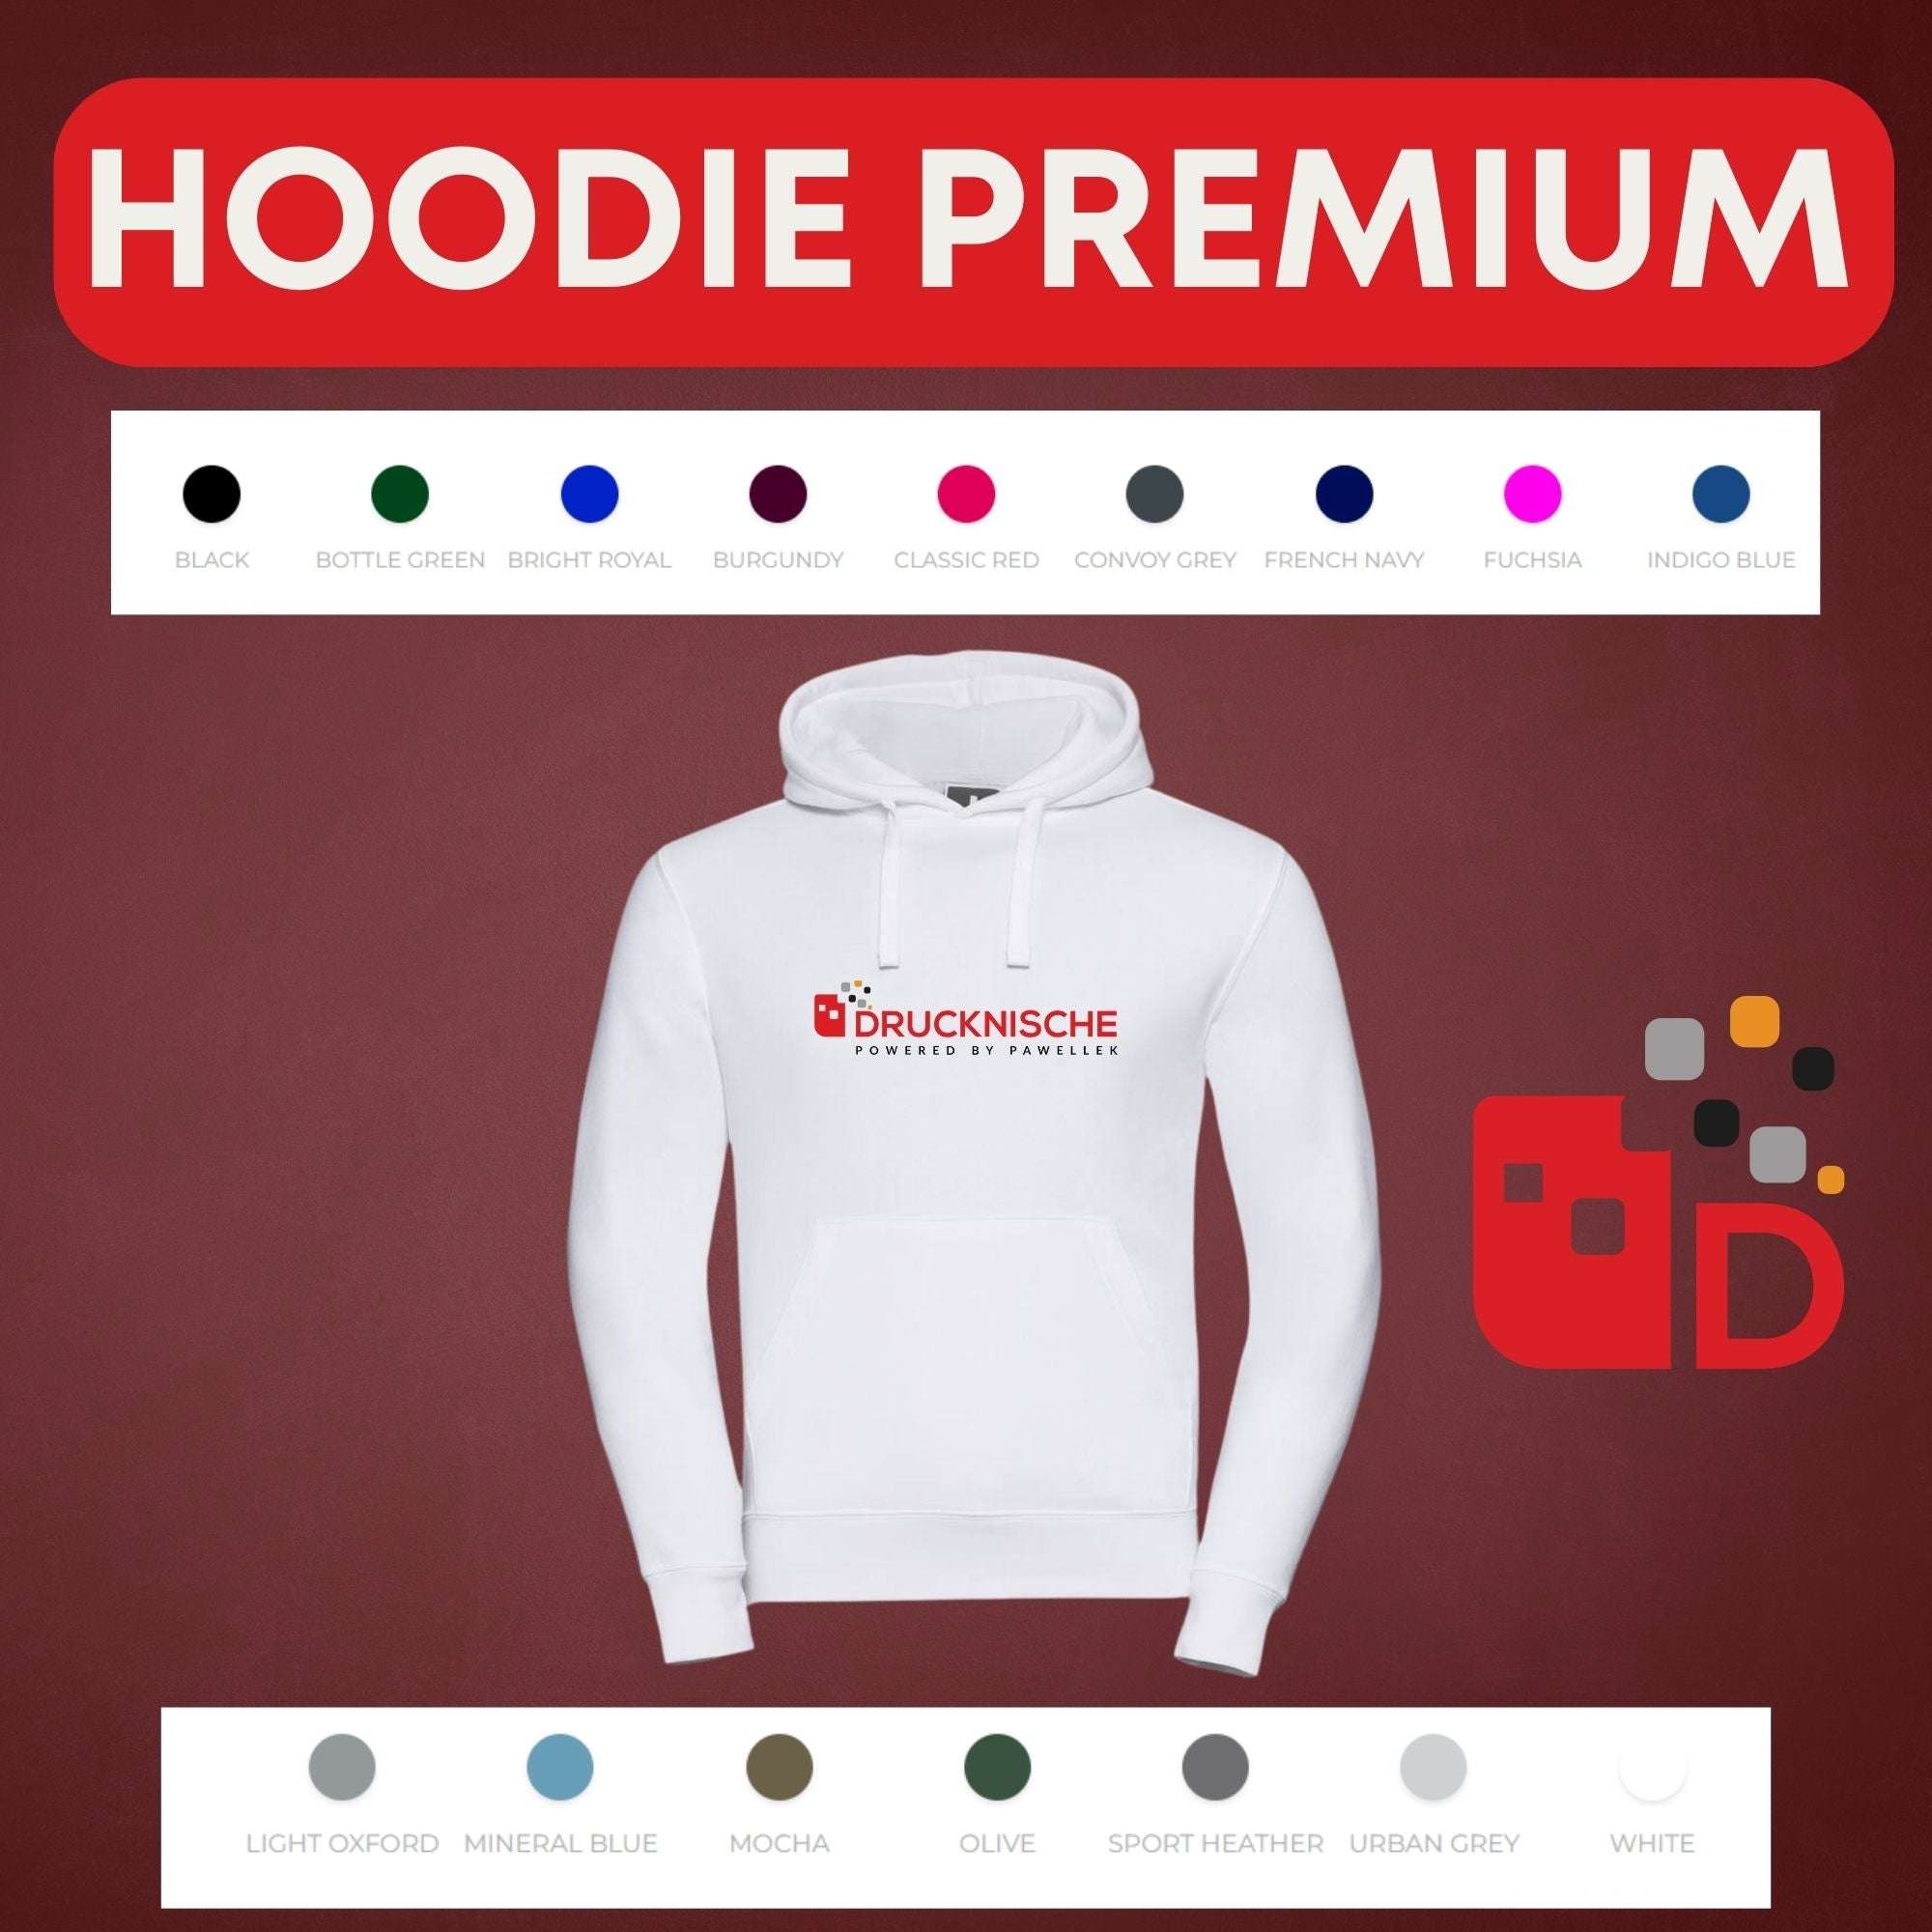 Hoodie Premium